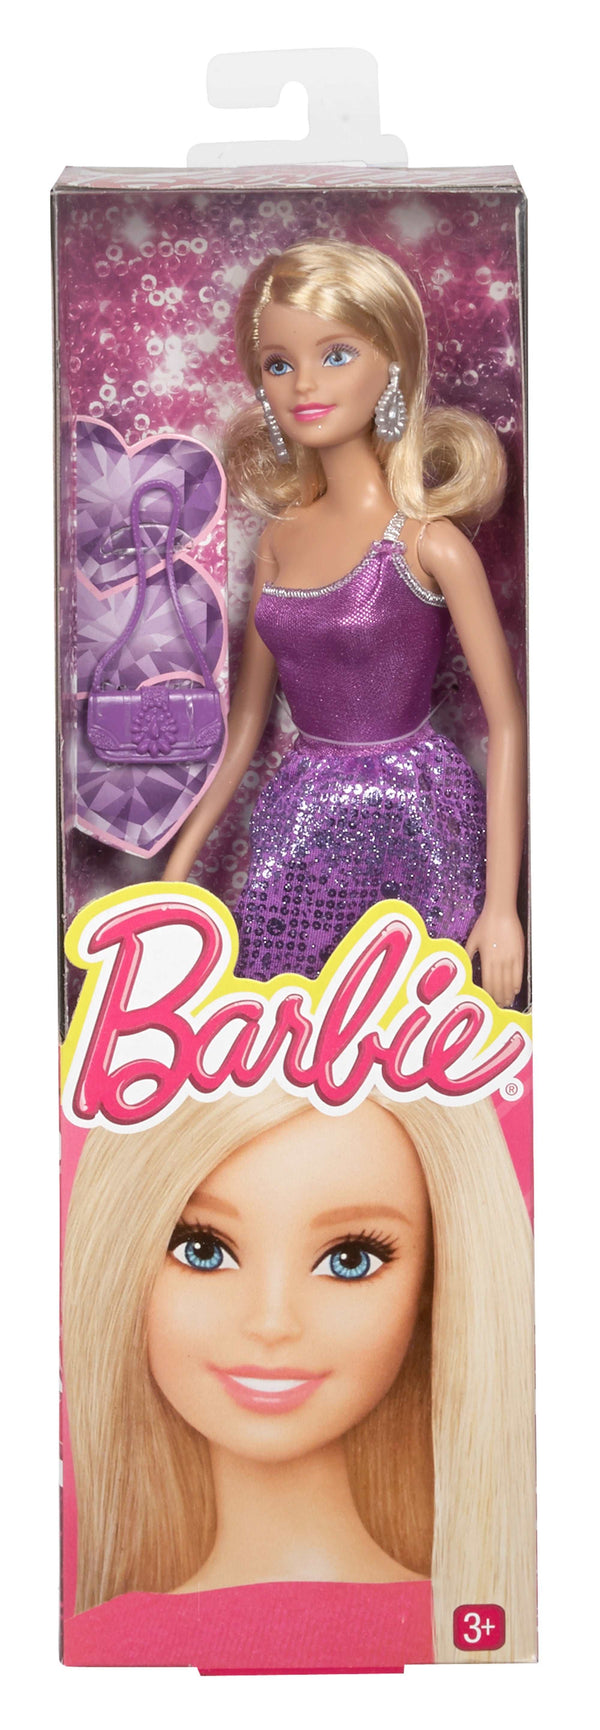 Barbie Glitz Doll Assortment The Kids Circle